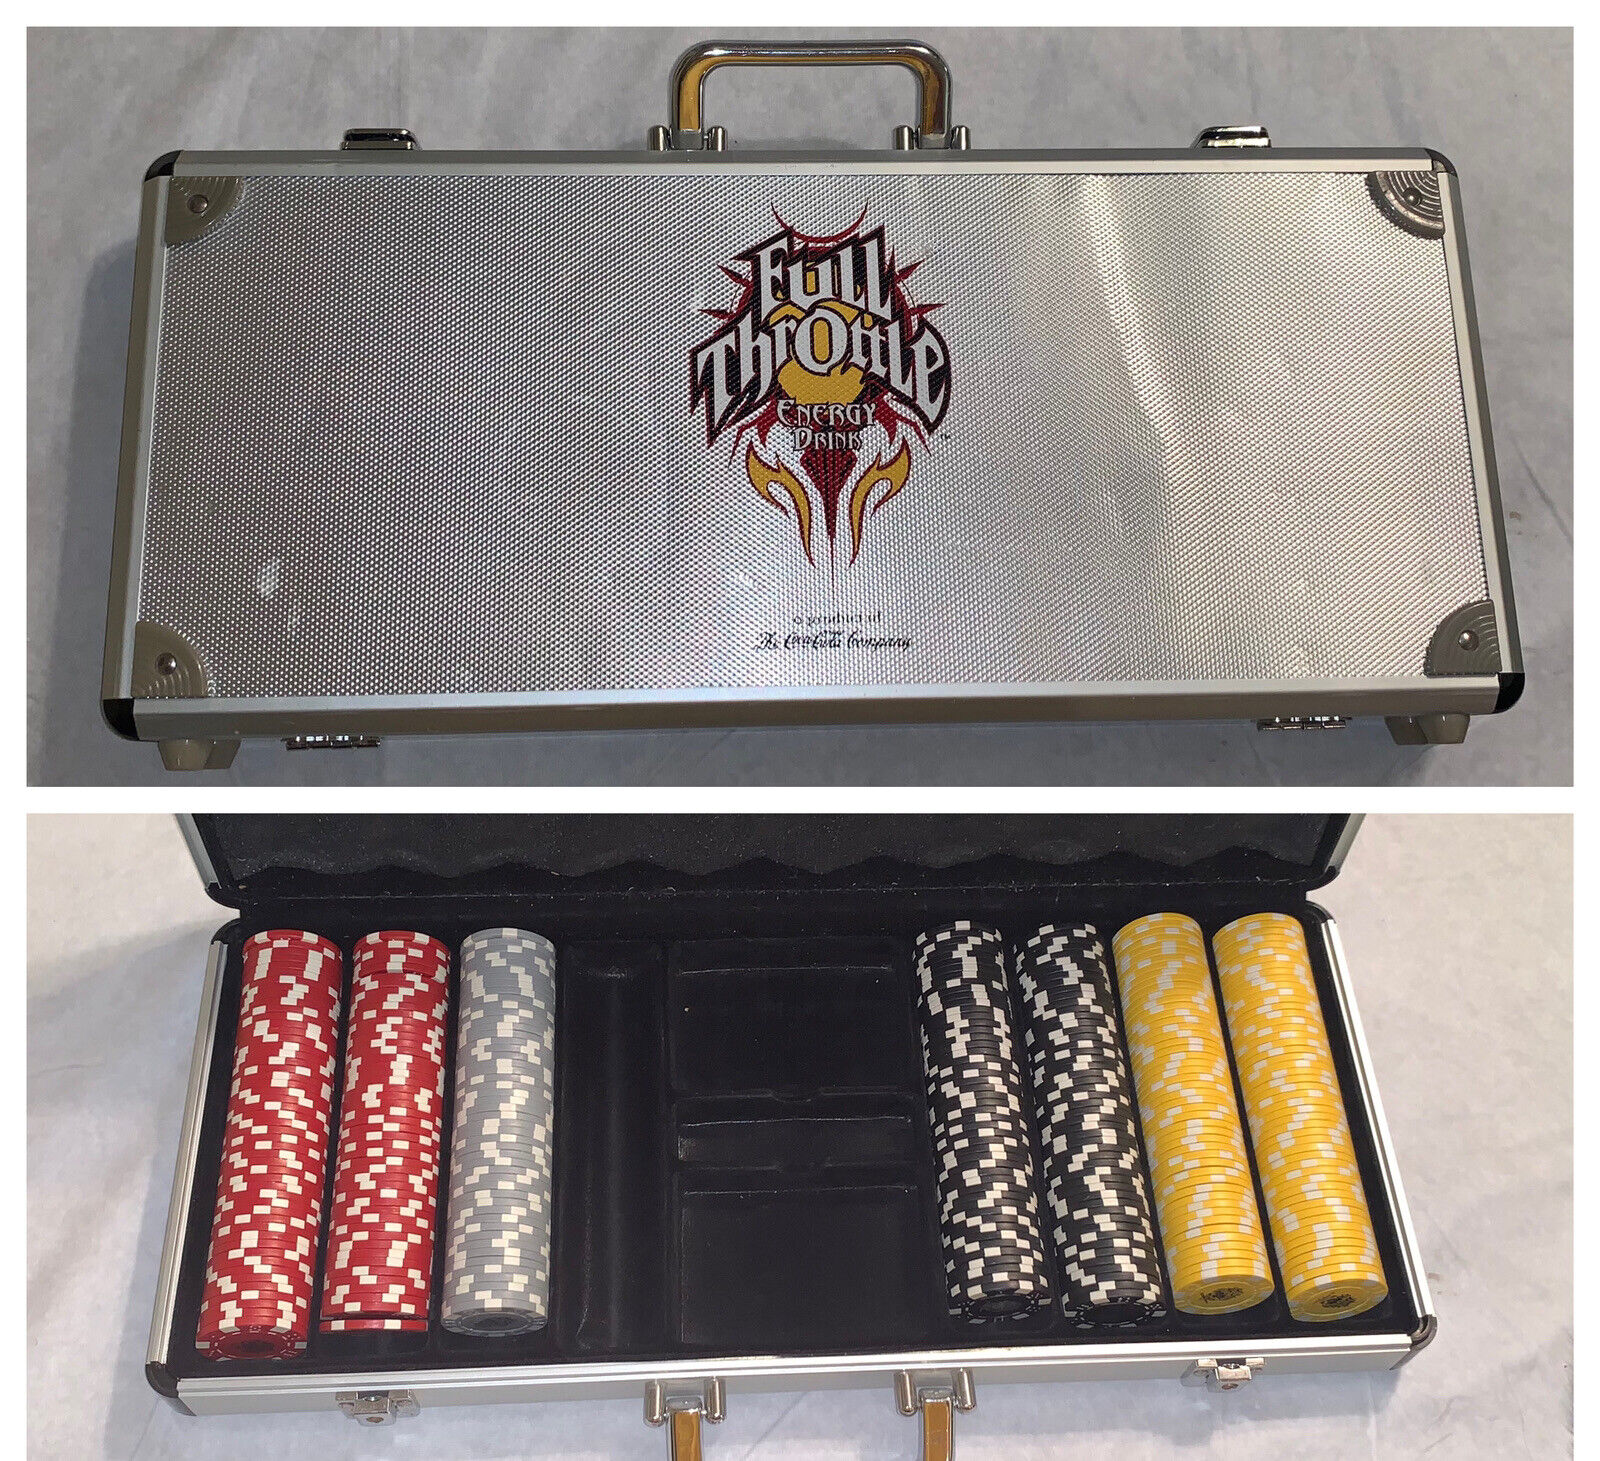 Full Throttle Energy Drink Branded Poker Chips & Metal Carrying Case